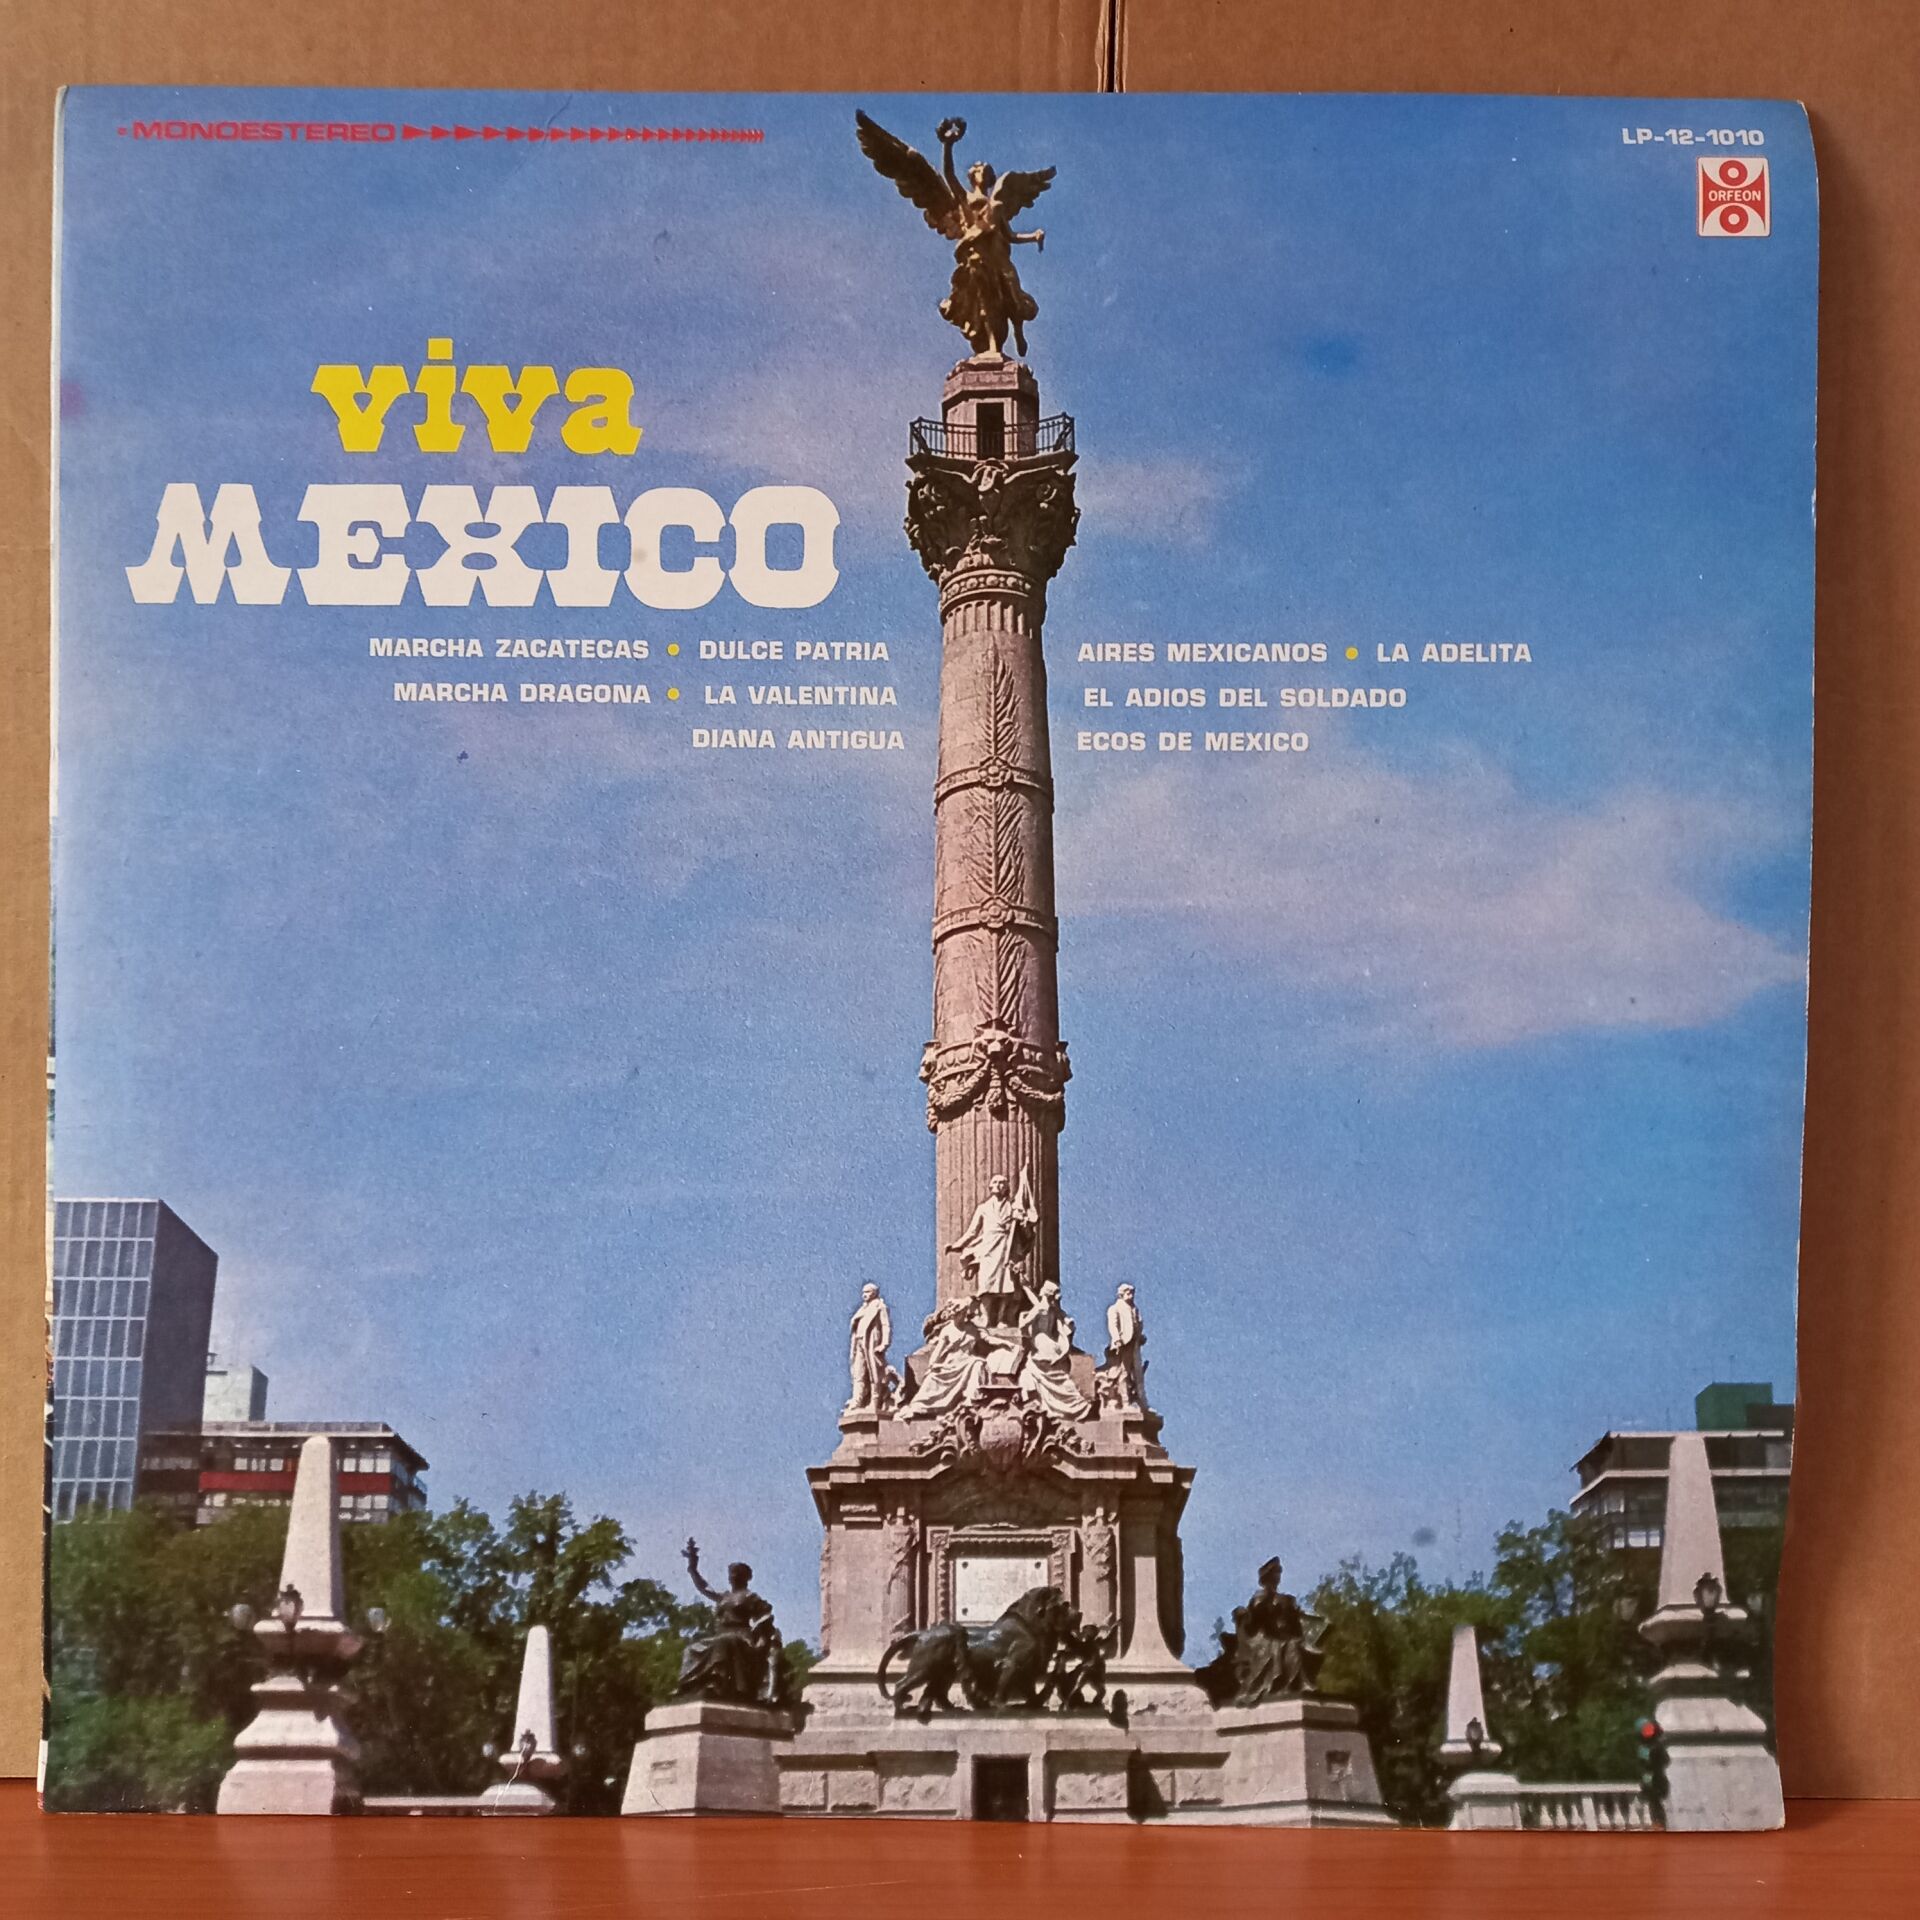 VIVA MEXICO / MARCHA ZACATECAS, MARCHA DRAGONA, DULCE PATRIA, LA VALENTINA, DIANA ANTIGUA, AIRES MEXICANOS, LA ADELITA - LP 2.EL PLAK